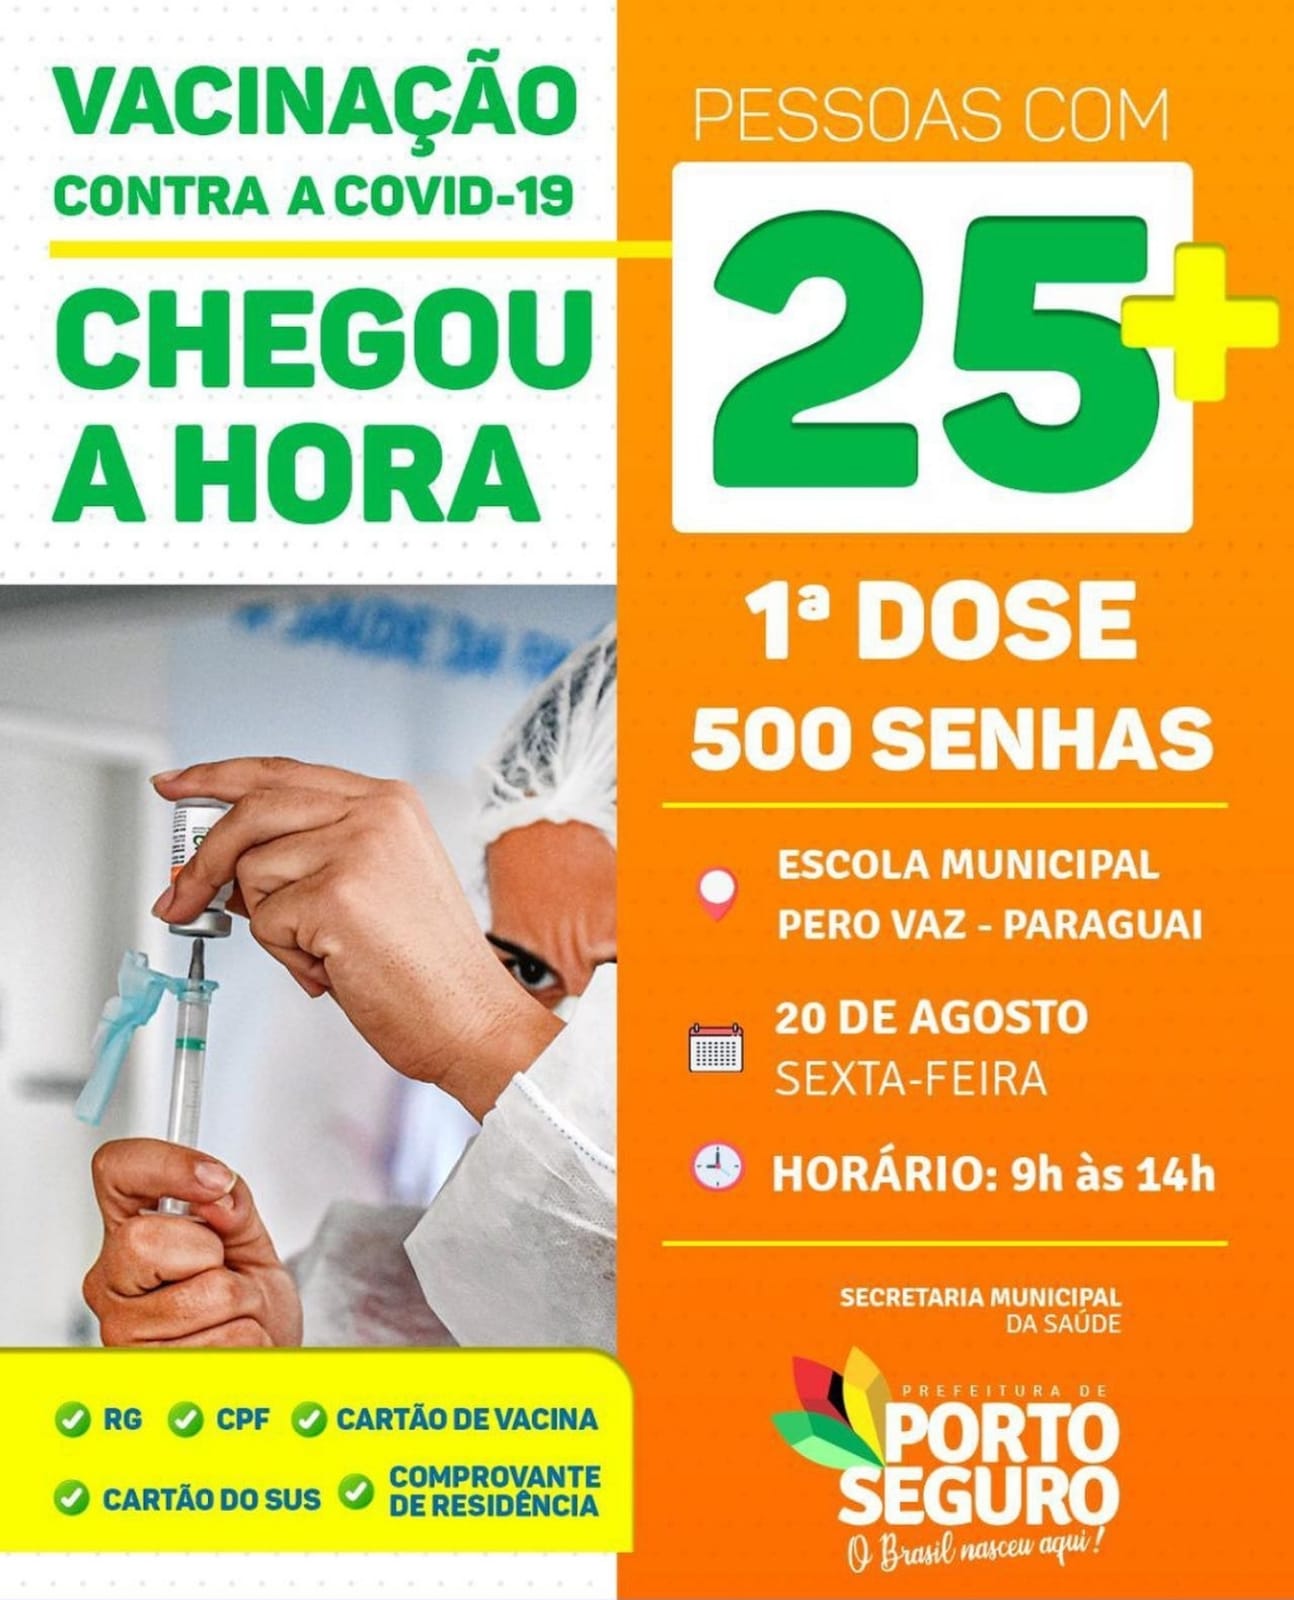 Porto Seguro: Cronograma de Vacinação contra a Covid-19 (20 de agosto) 8